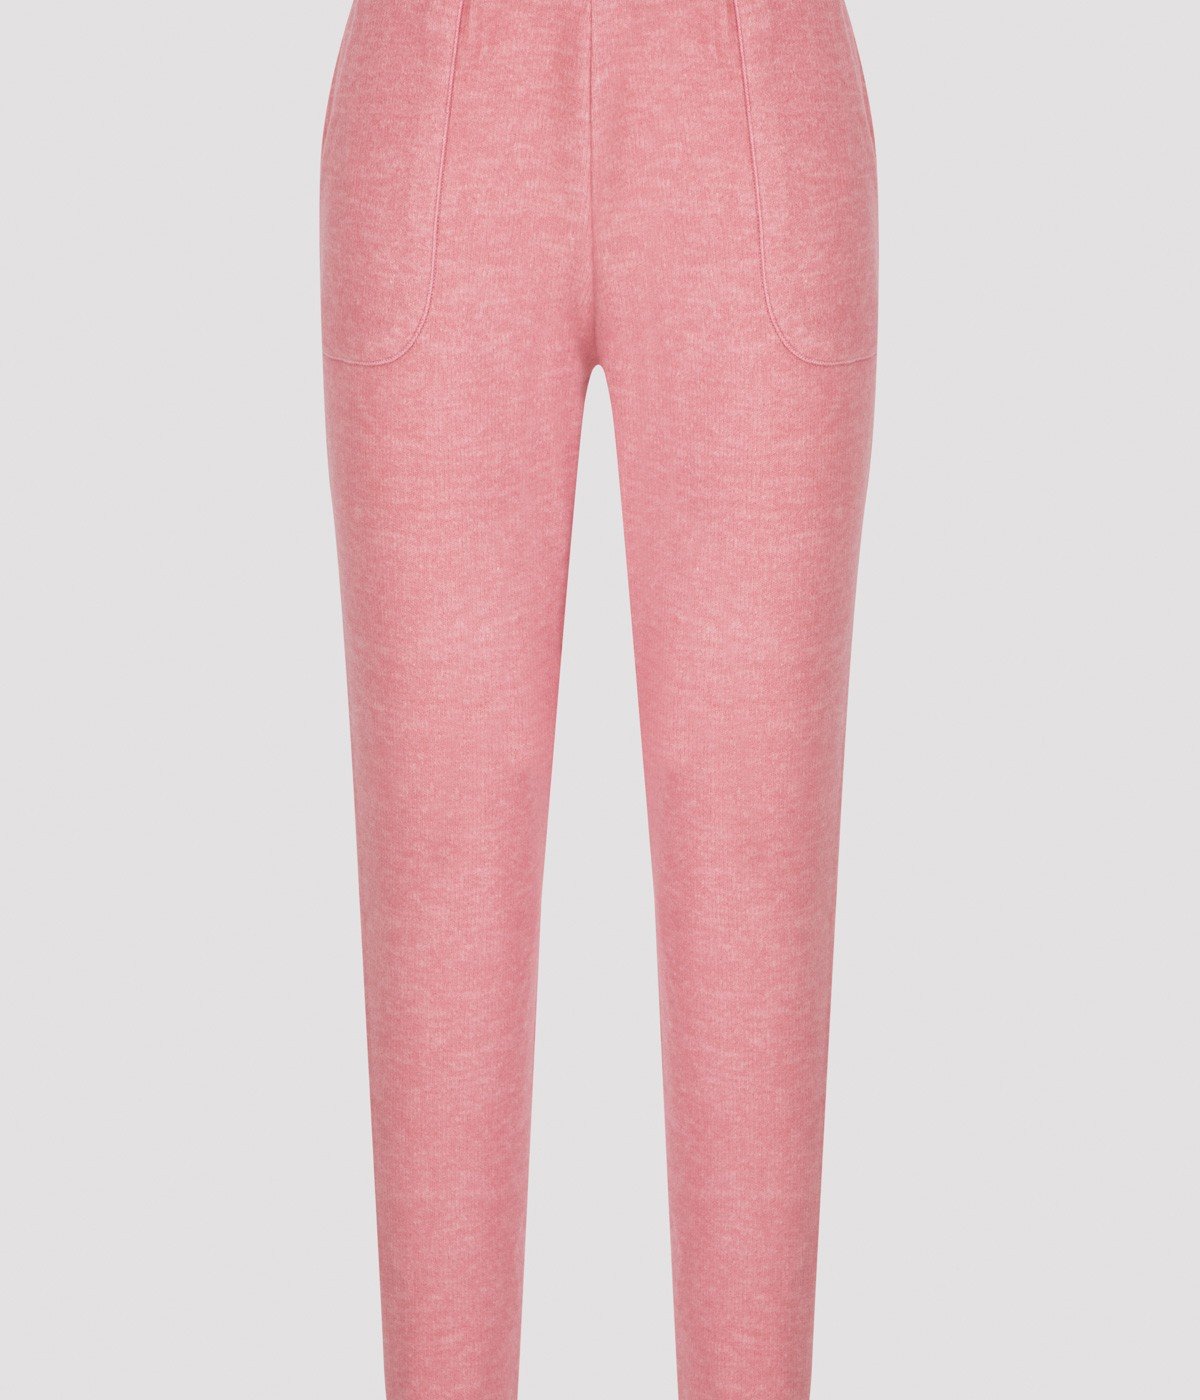 Pantaloni Rose Soft Cuff